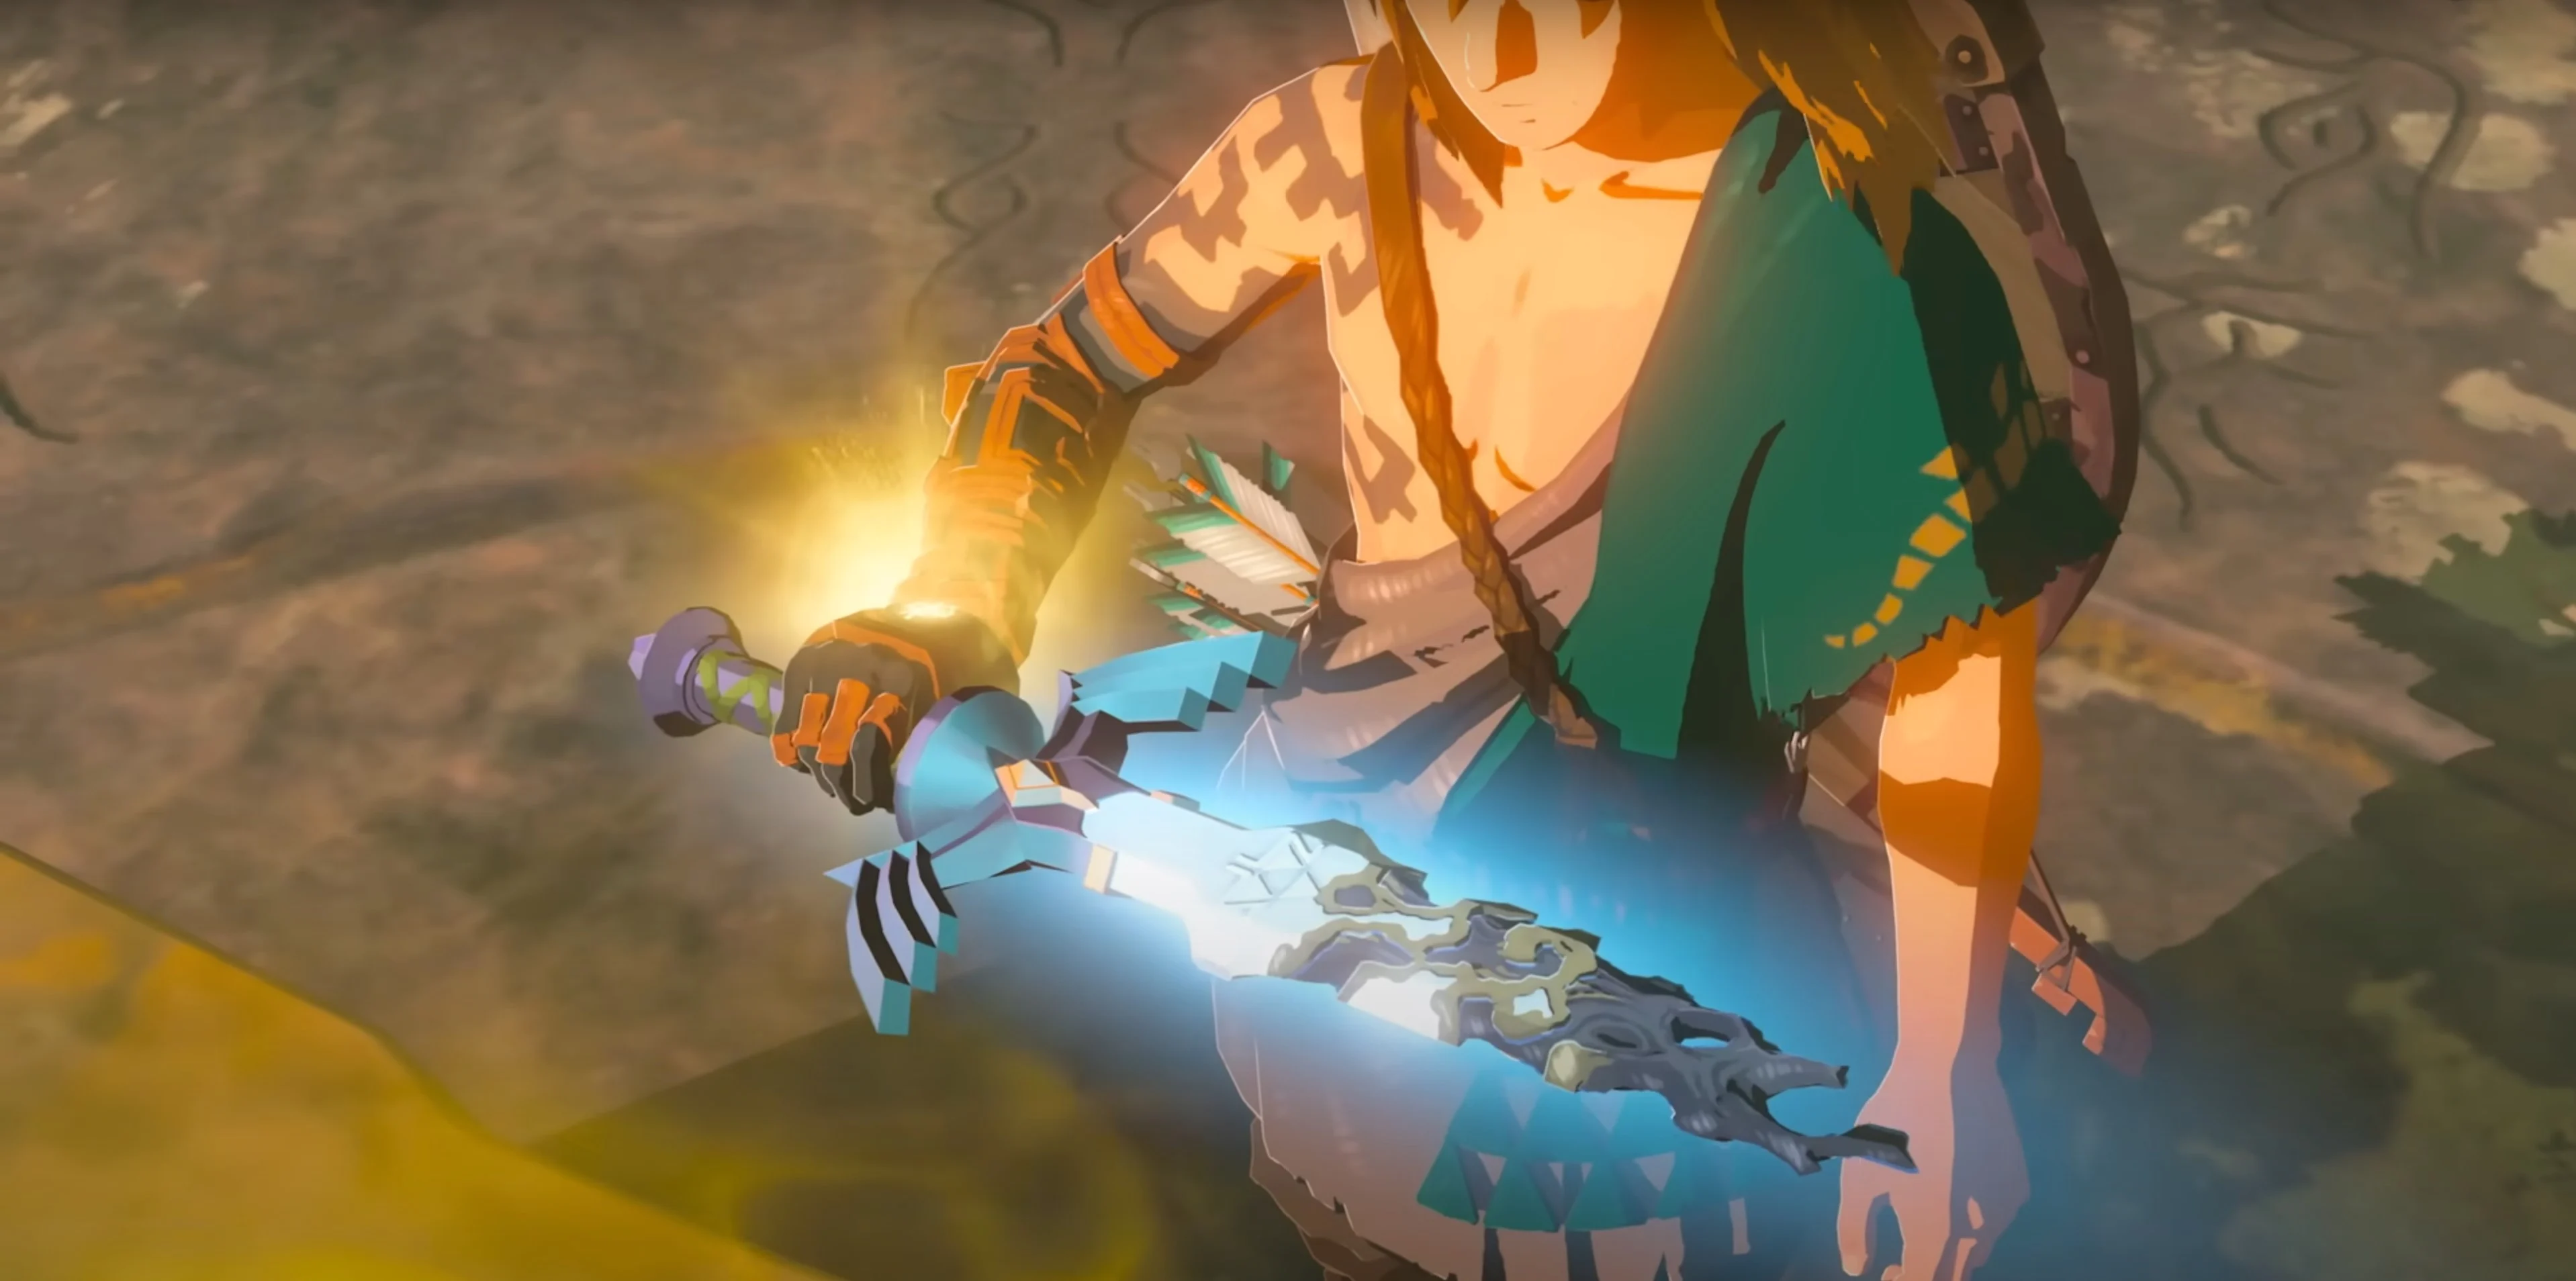 Nintendo publikuje aktualizację dla Tears of the Kingdom, która naprawia błędy i dodaje możliwość zdobycia darmowych przedmiotów na początku gry.